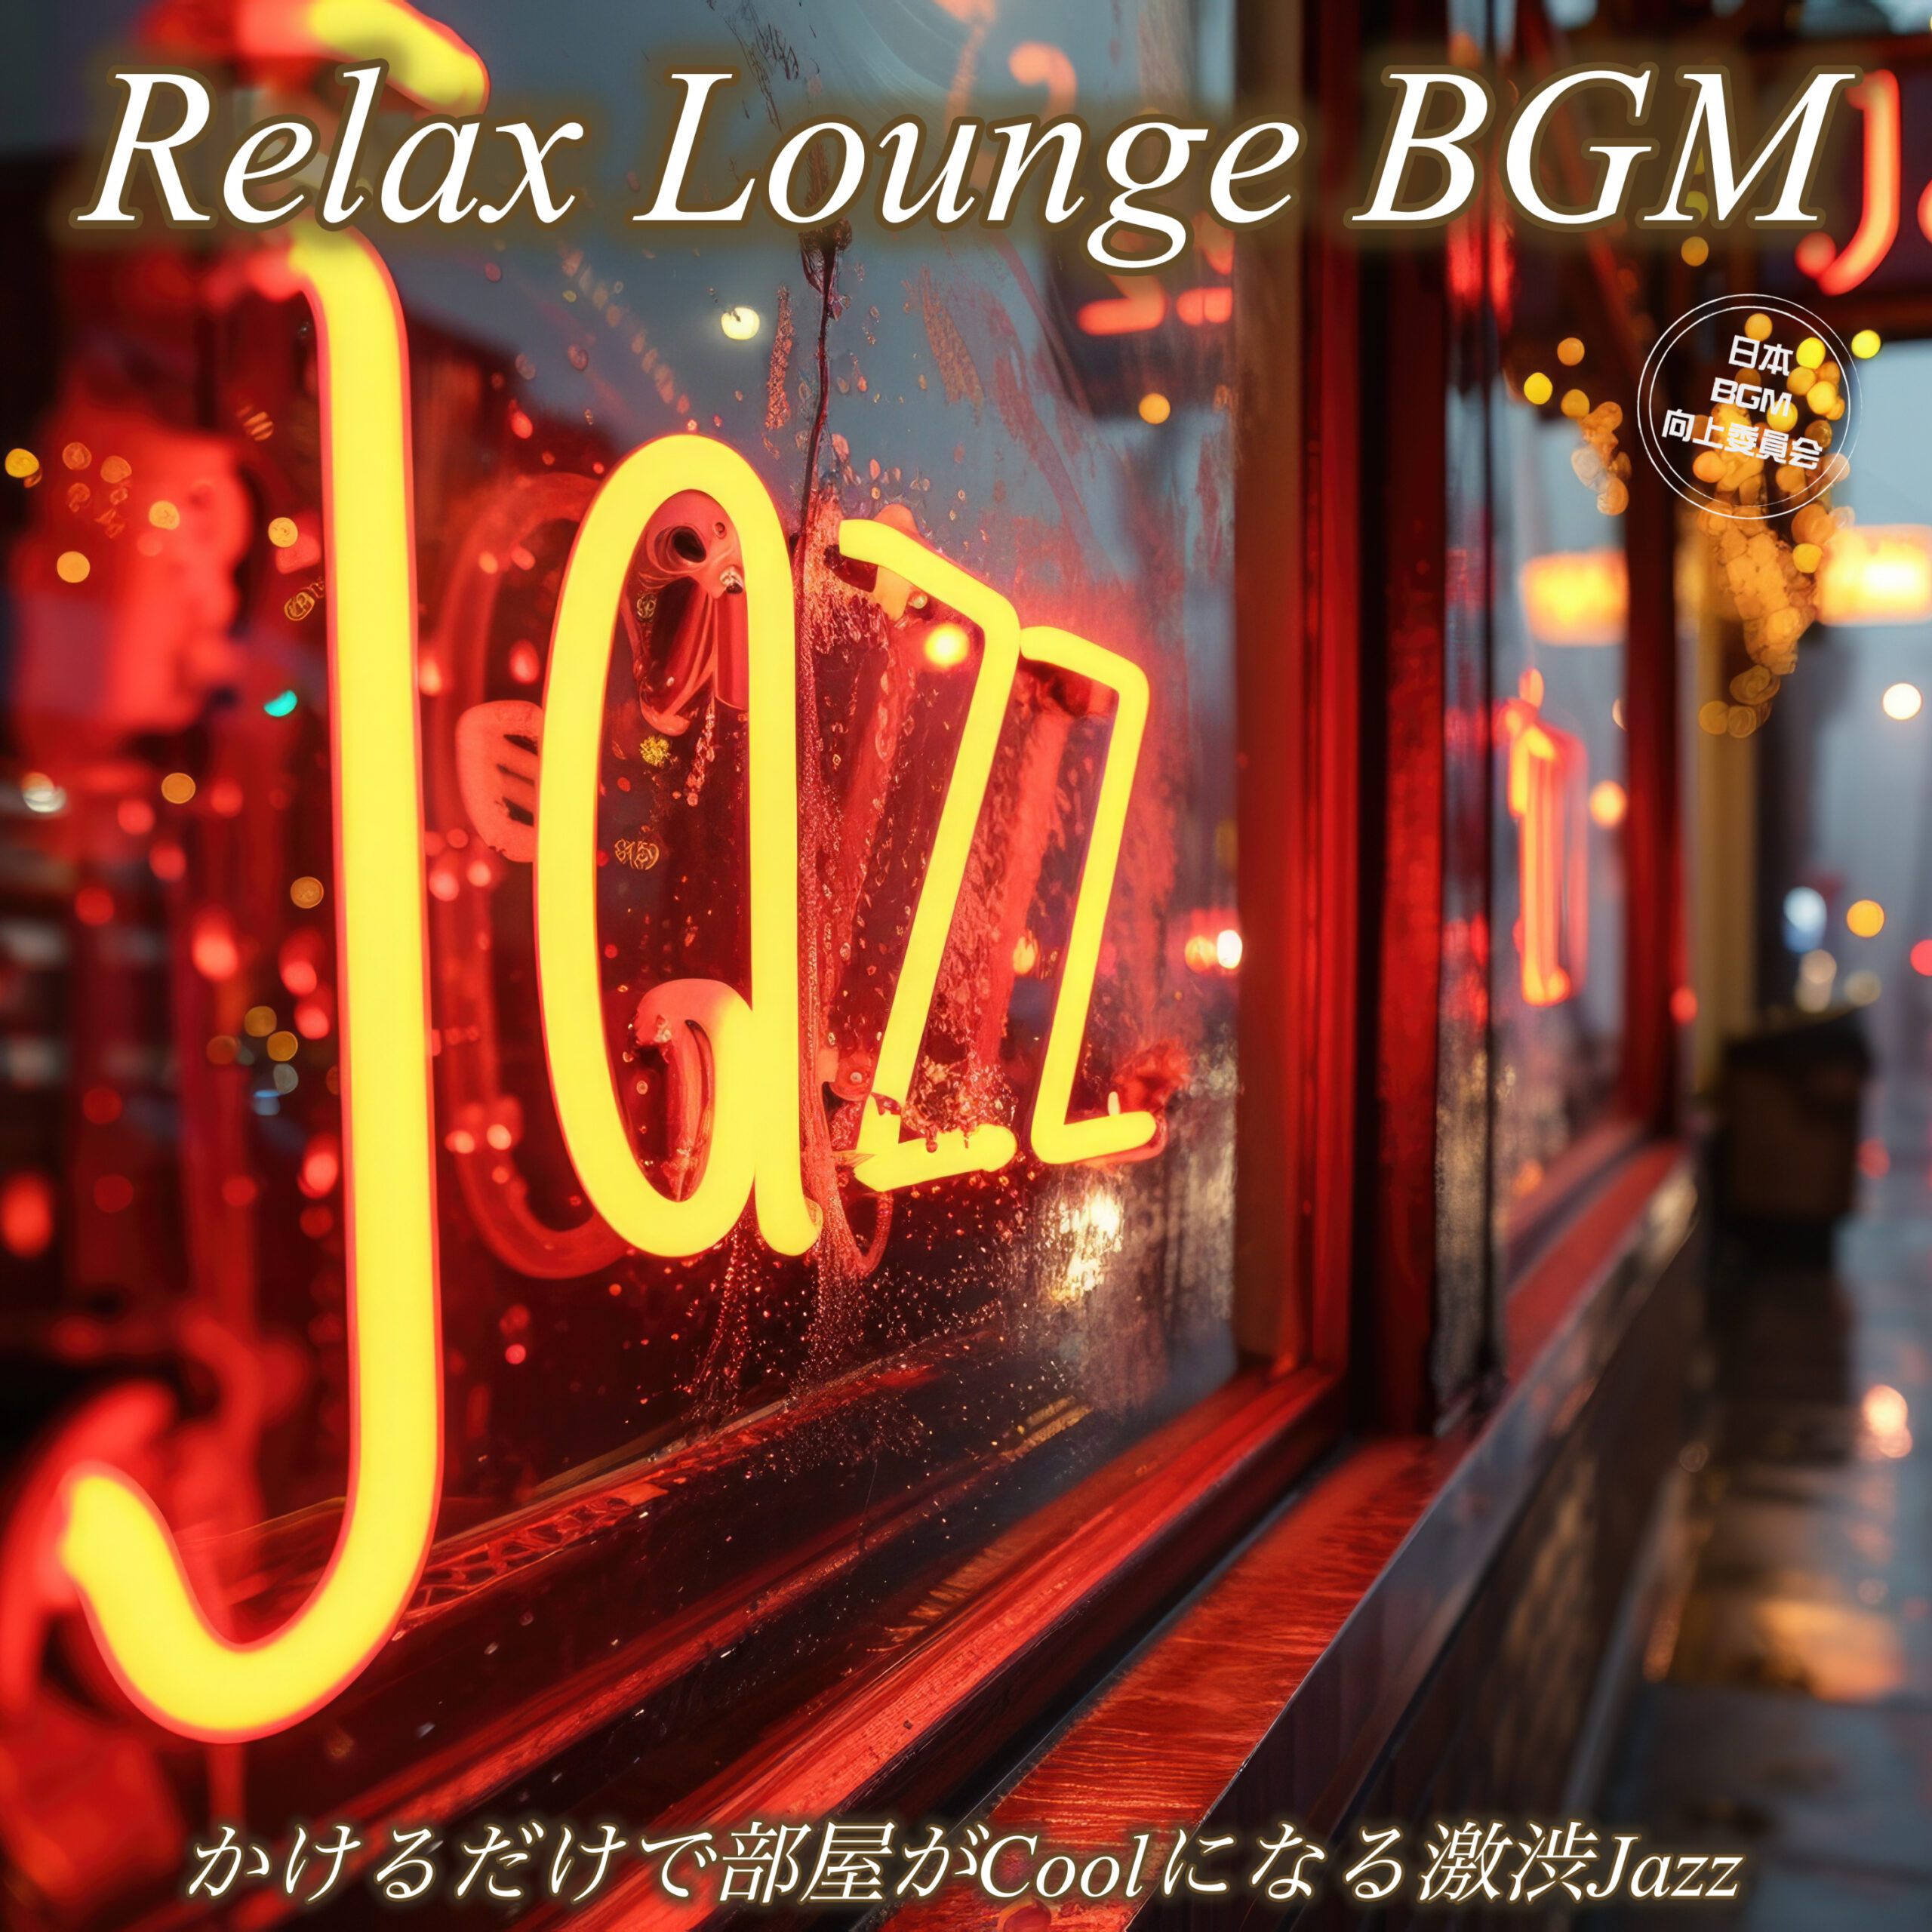 Relax Lounge BGM かけるだけで部屋がCoolになる激渋Jazz 晩酌用 夜の作業用 リラックスタイムに